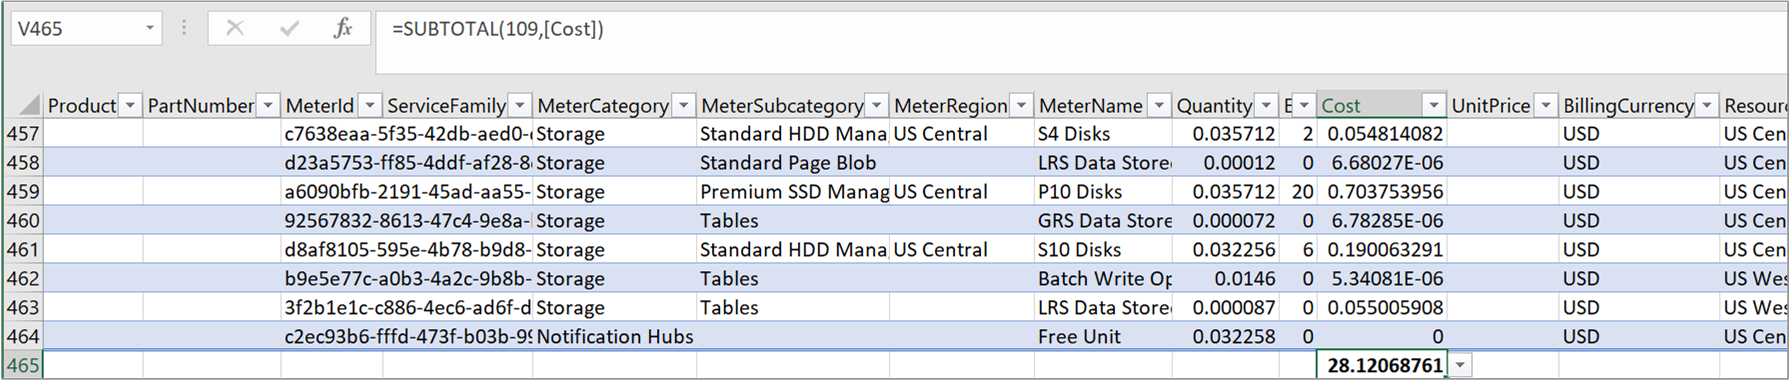 屏幕截图显示包含成本总和的示例 CSV 使用情况文件。